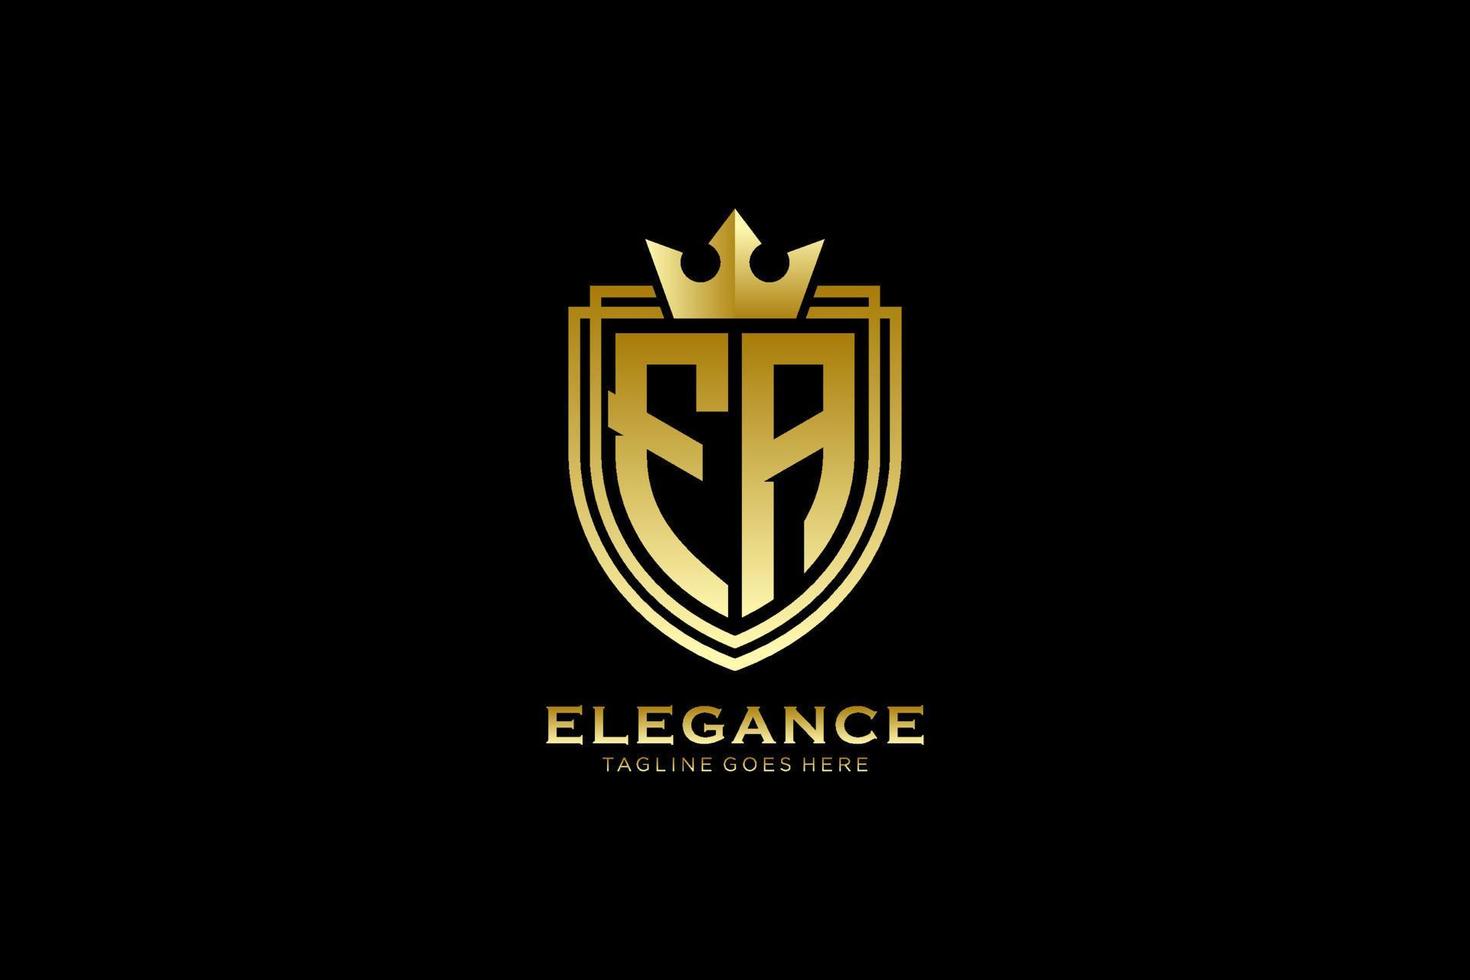 logo monogramme de luxe élégant initial fa ou modèle de badge avec volutes et couronne royale - parfait pour les projets de marque de luxe vecteur